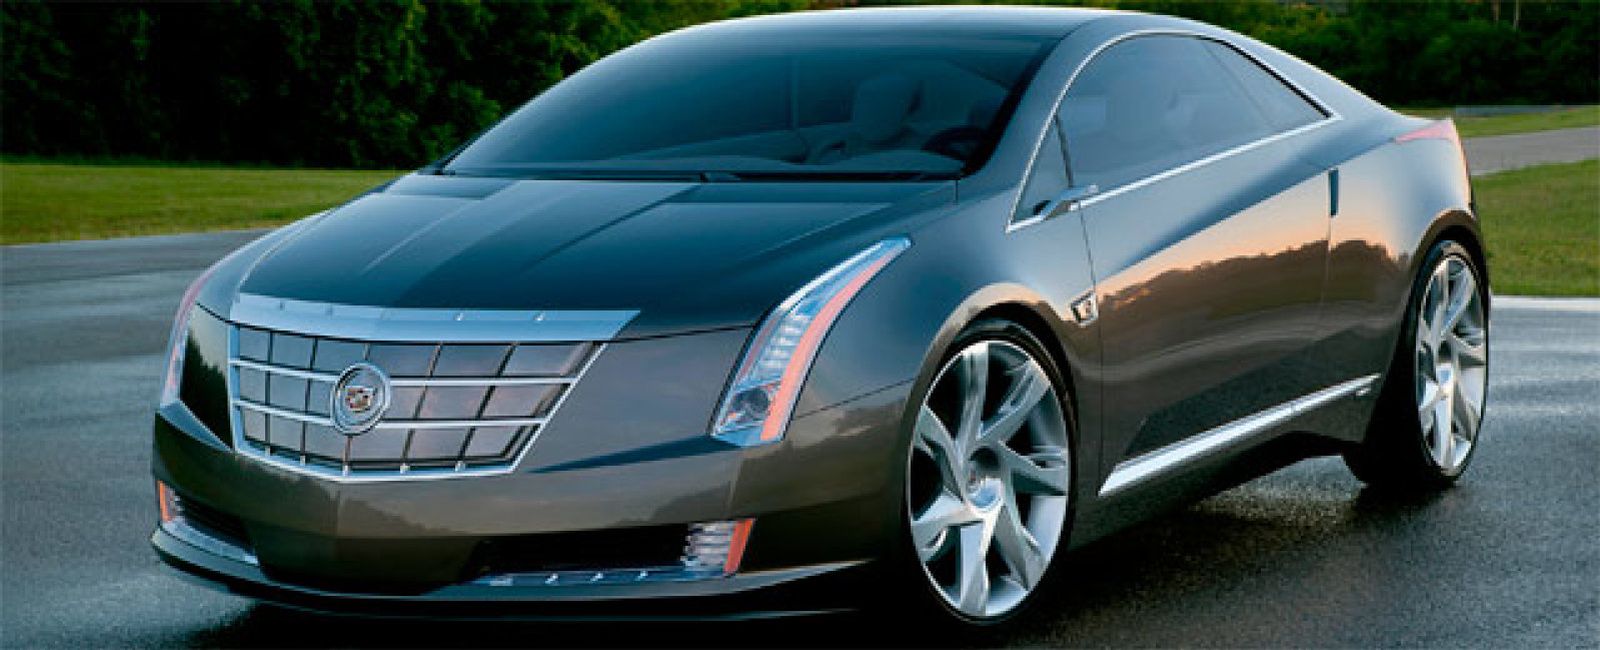 Foto: Si Elvis levantara la cabeza... General Motors fabricará un Cadillac eléctrico en 2012